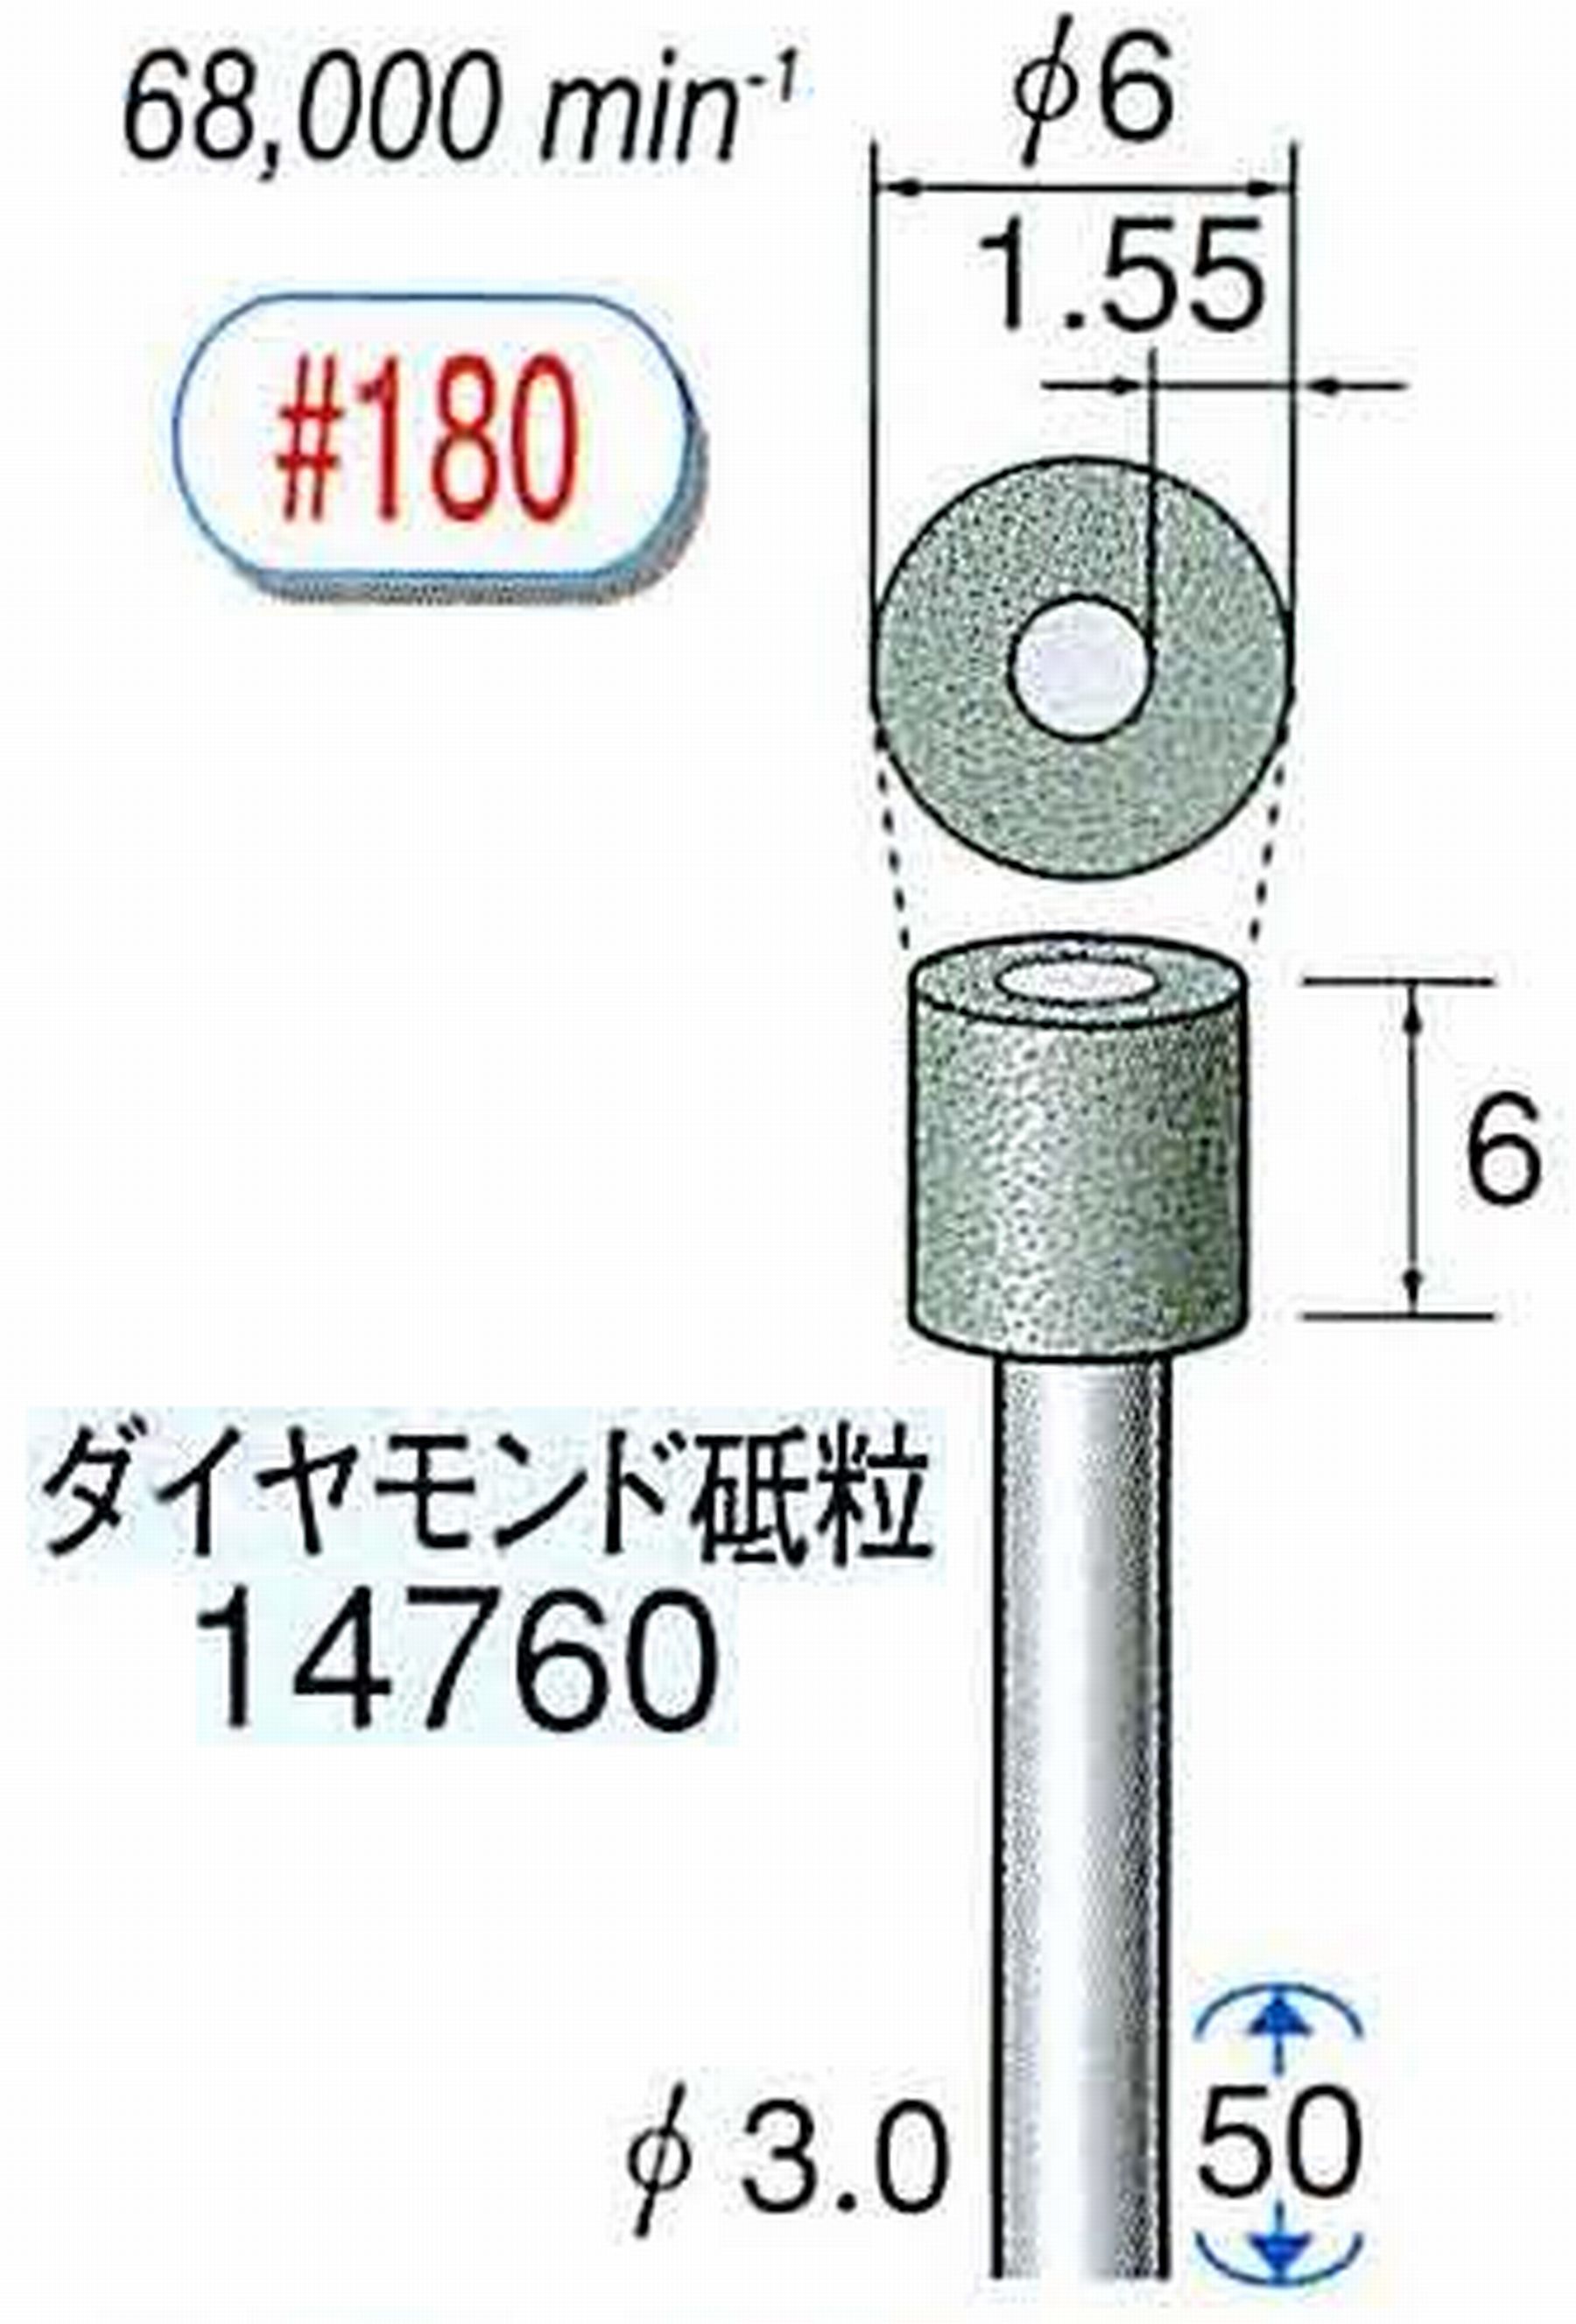 ナカニシ/NAKANISHI ビトリファイドダイヤモンド砥石 ダイヤモンド砥粒 軸径(シャンク)φ3.0mm 14760